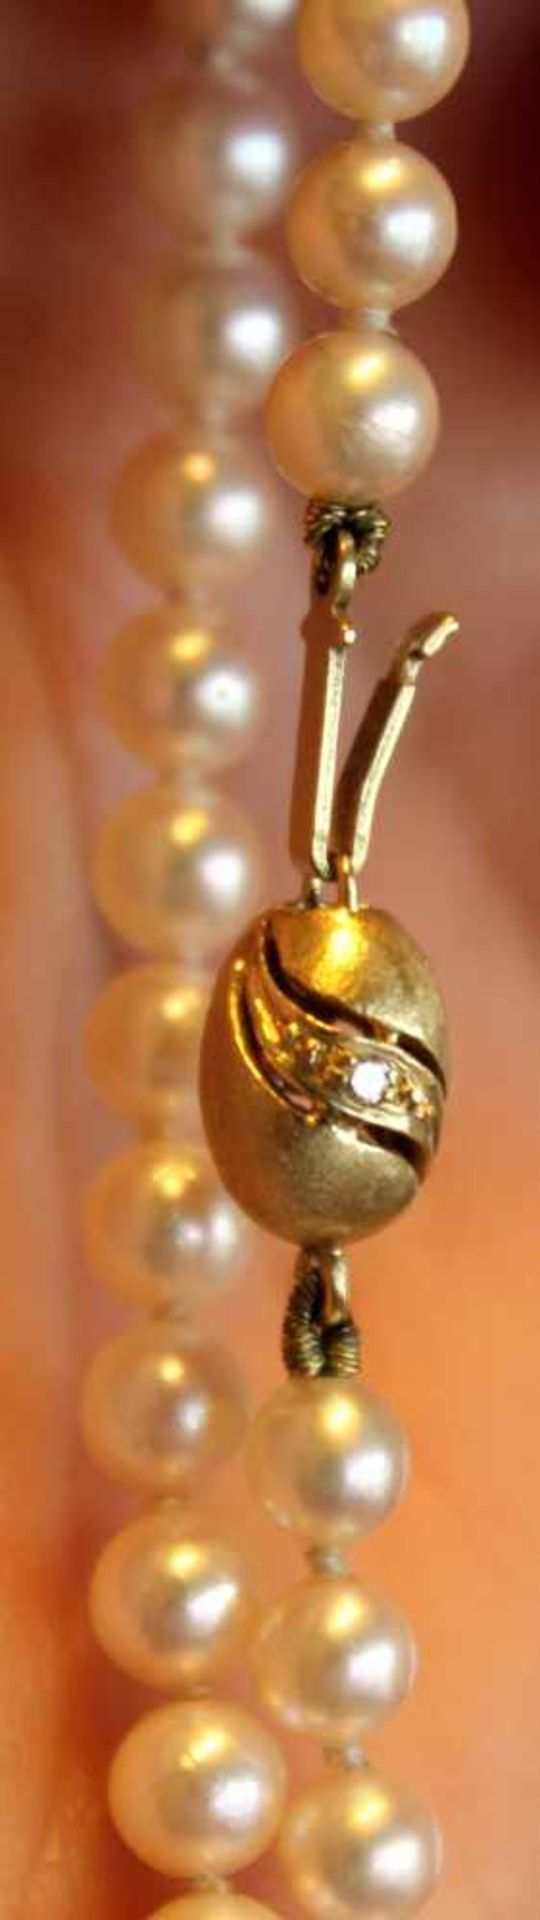 Perlenkette 4 mm, geknotet, Goldschließe 14 Karat mit Diamanten. 41 cm Gesamtlänge. 13 Gramm. - Bild 5 aus 5